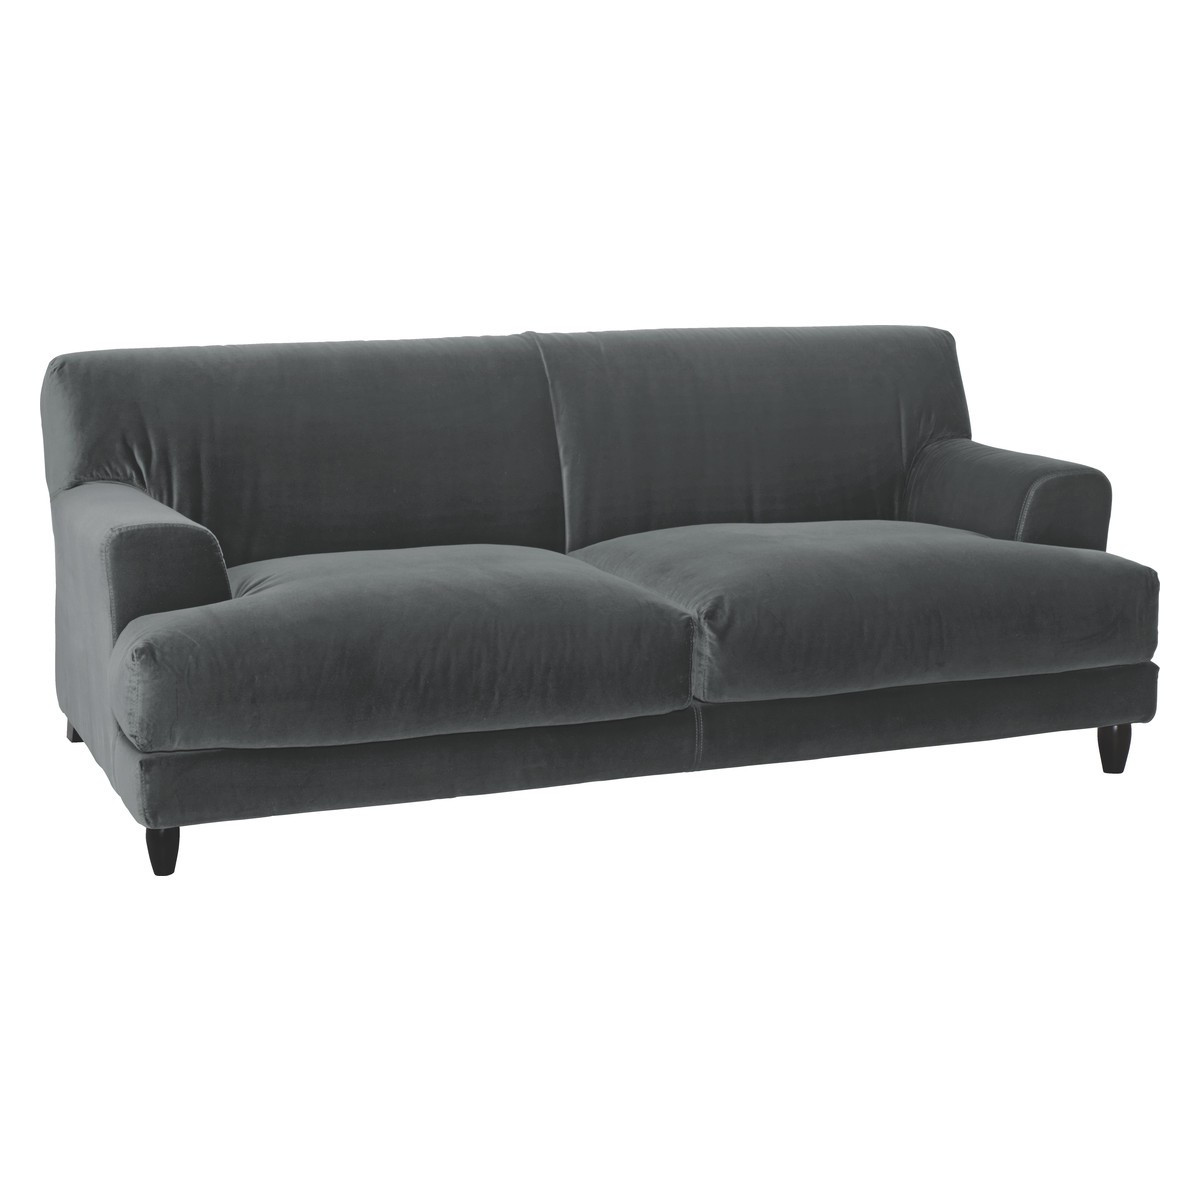 Best ideas about Velvet Sleeper Sofa
. Save or Pin Sofa Lavish Velvet Settee Design Will plete Your Now.